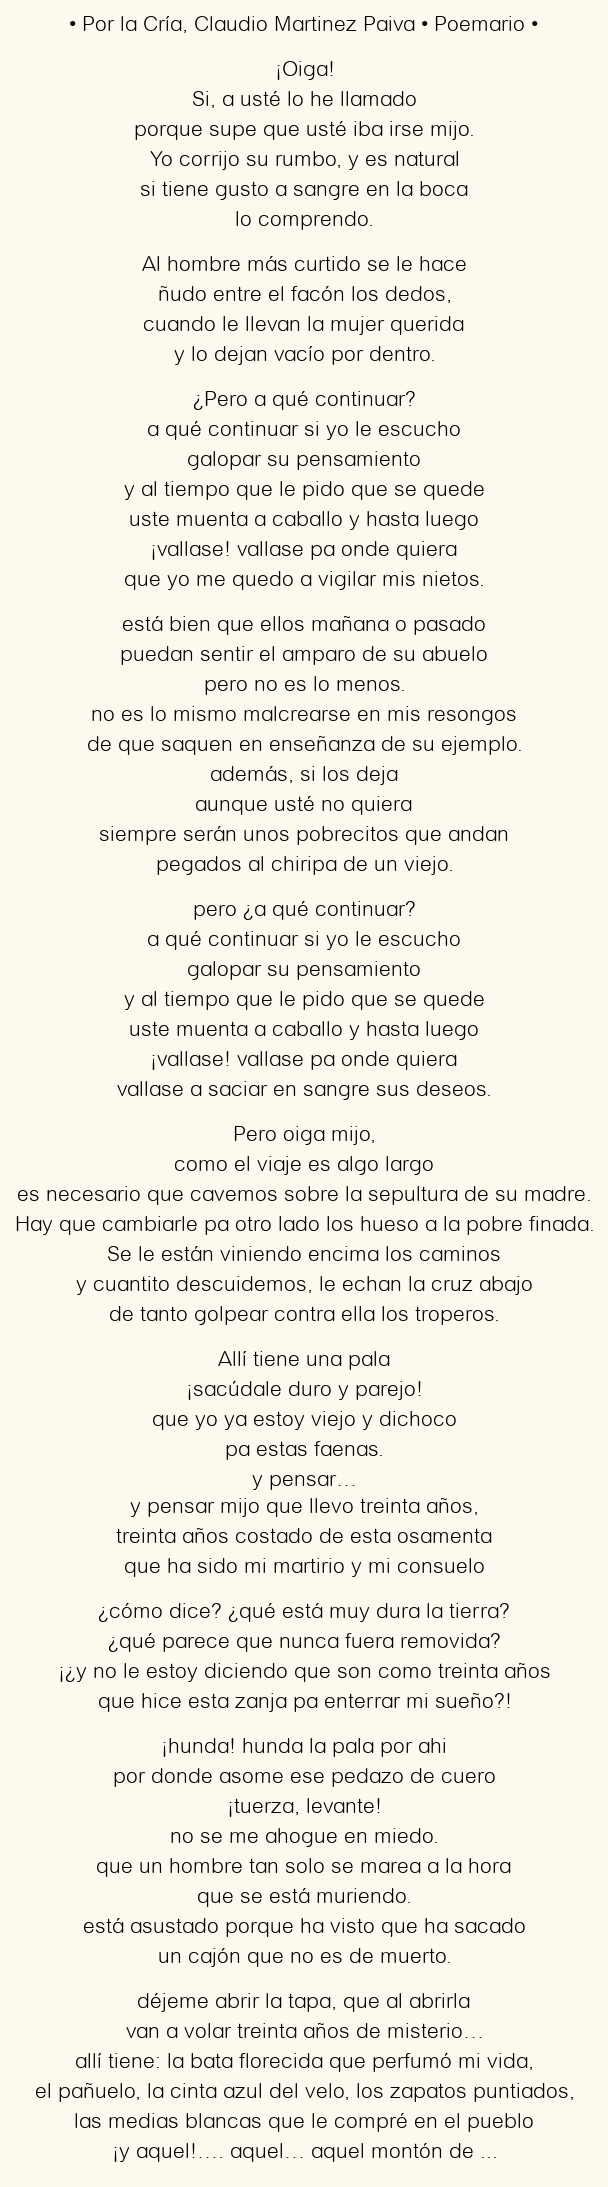 Imagen con el poema Por la Cría, por Claudio Martinez Paiva